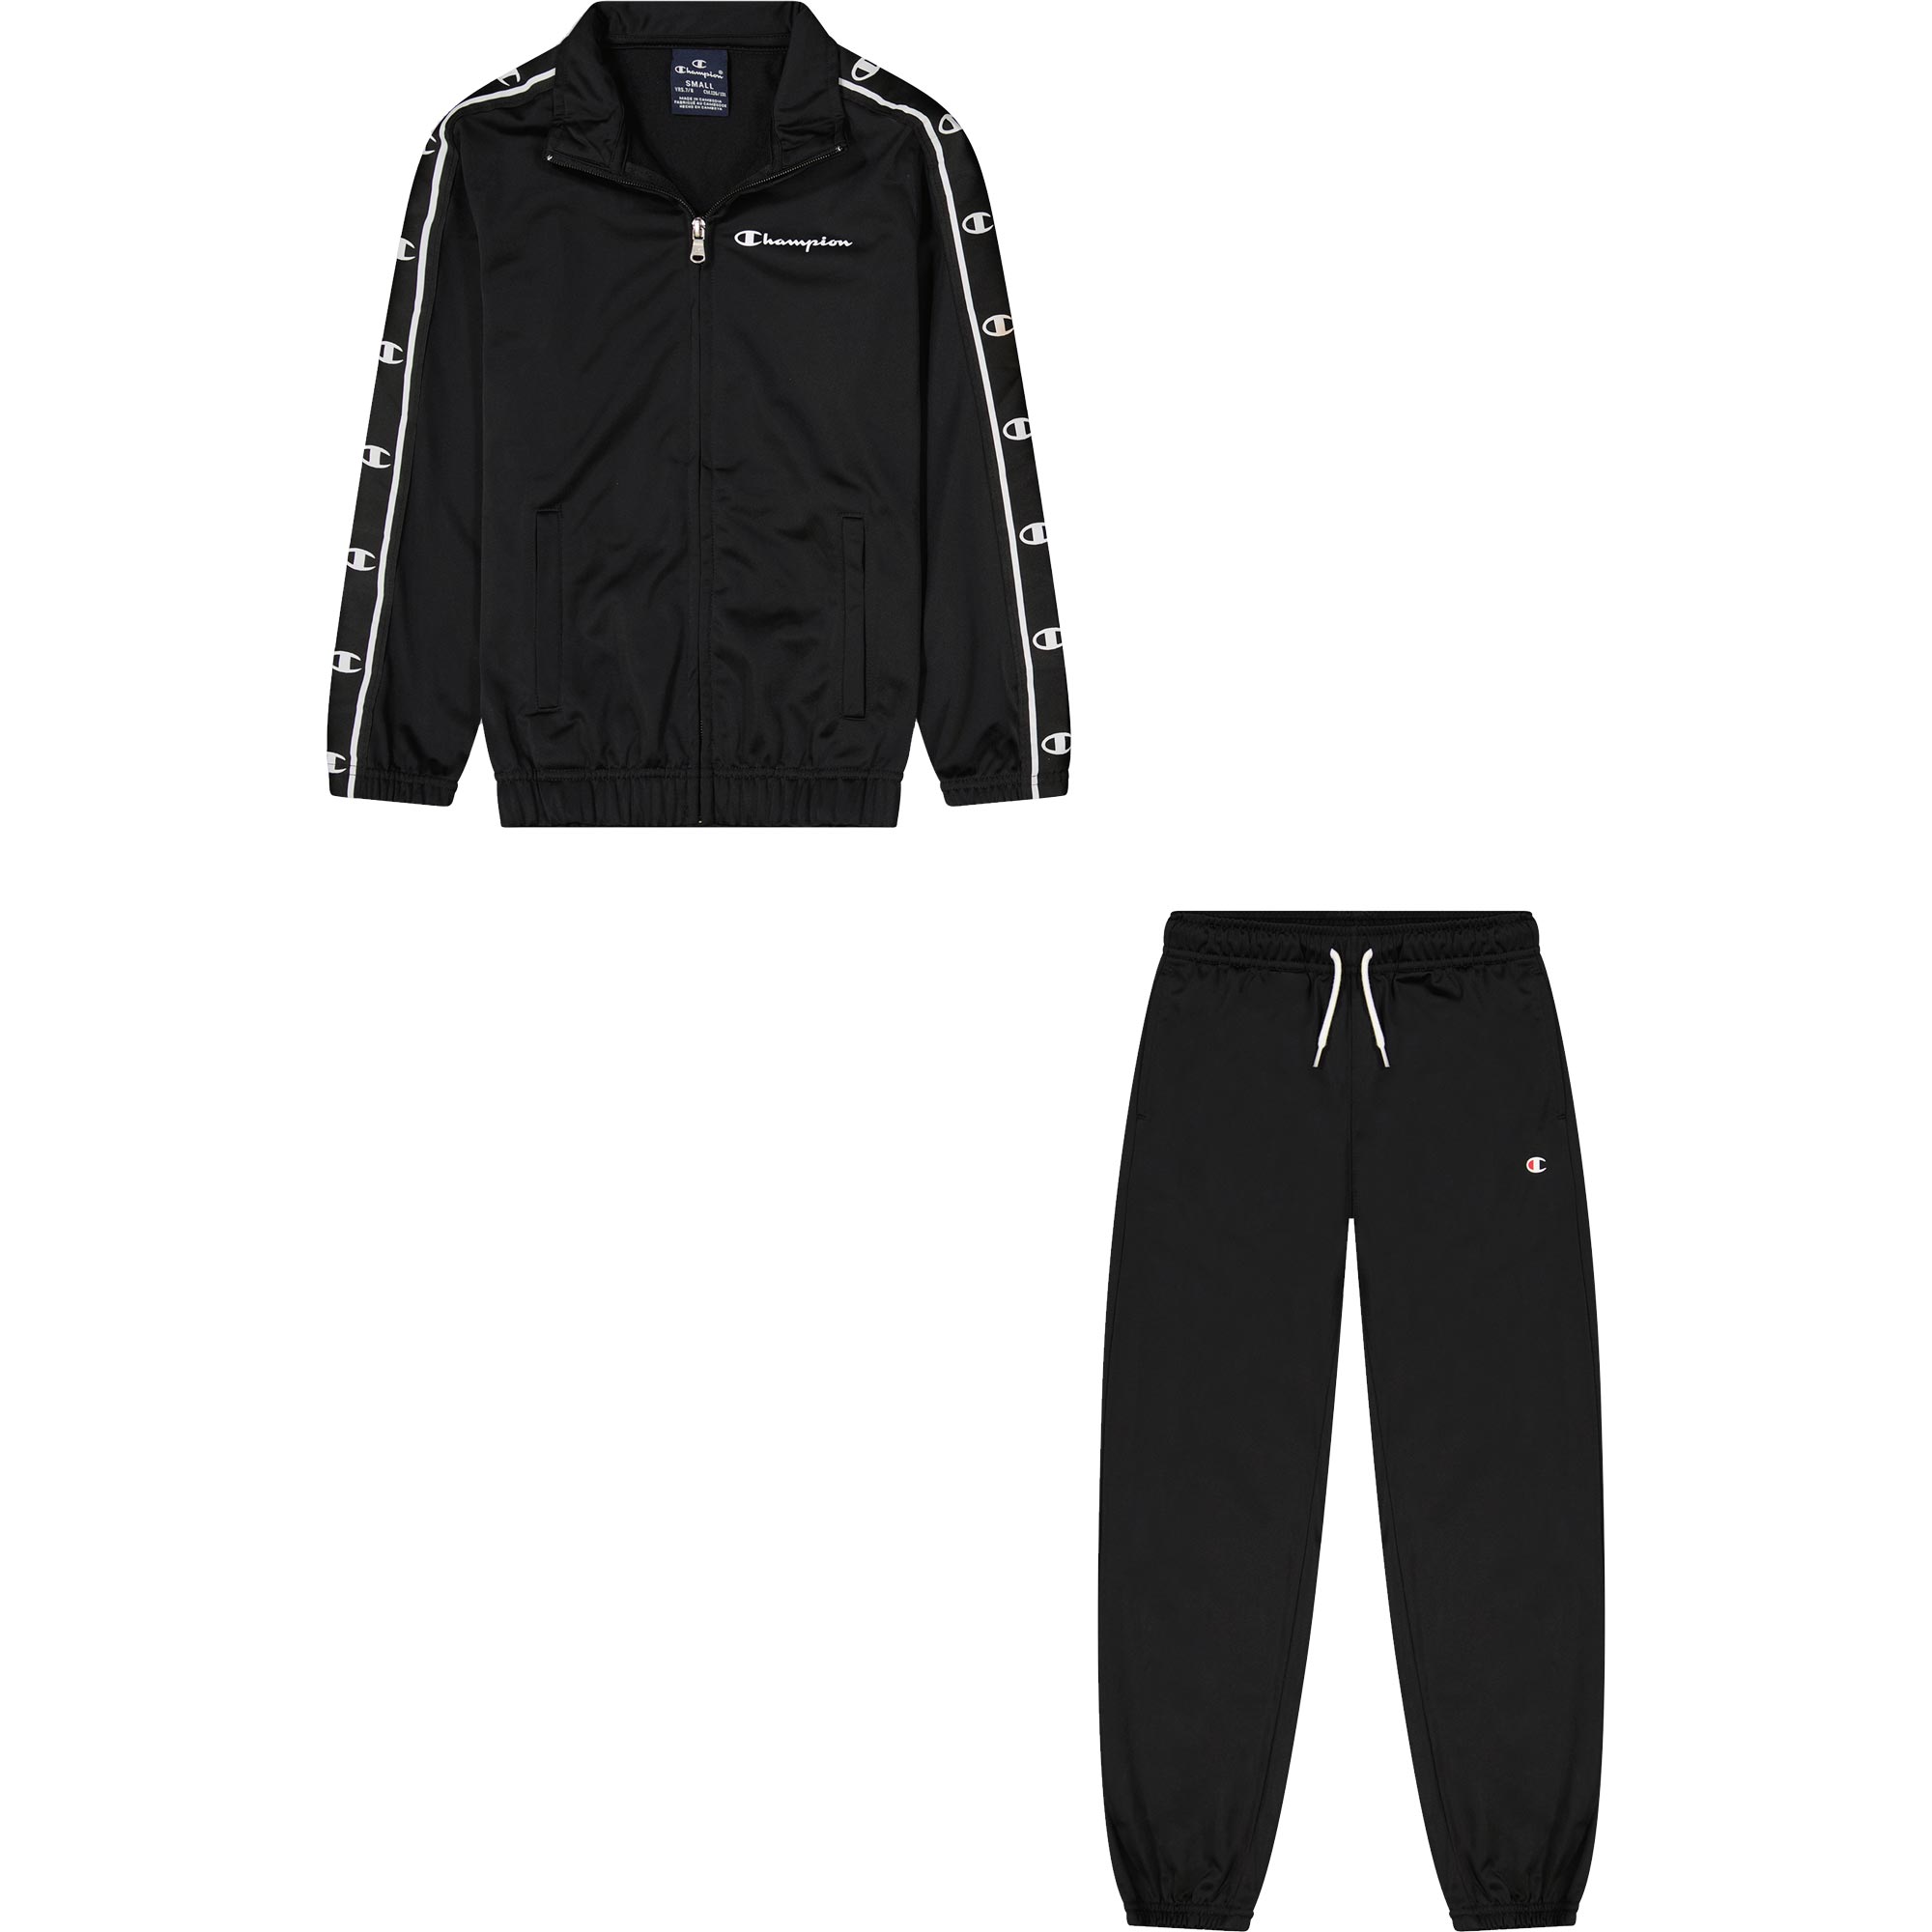 Fachgeschäft kaufen Champion - Full Zip Suit Jogginganzug Shop Kinder beauty Sport kaufen im Bittl black